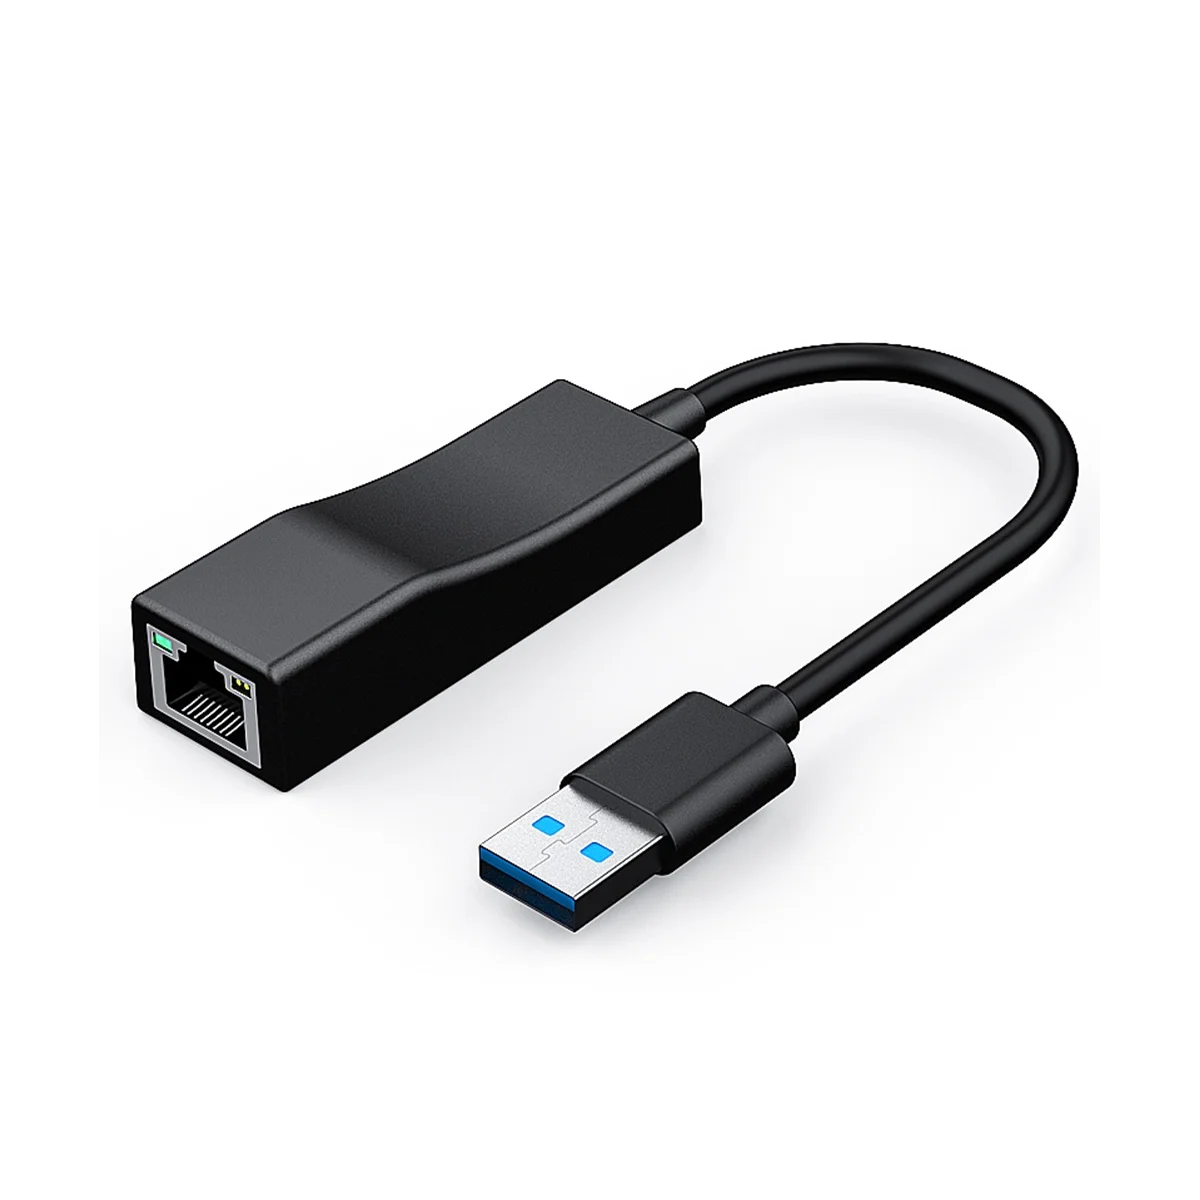 

Адаптер USB-Ethernet, адаптер USB 3,0-Gigabit Ethernet LAN, совместим с Surface Pro